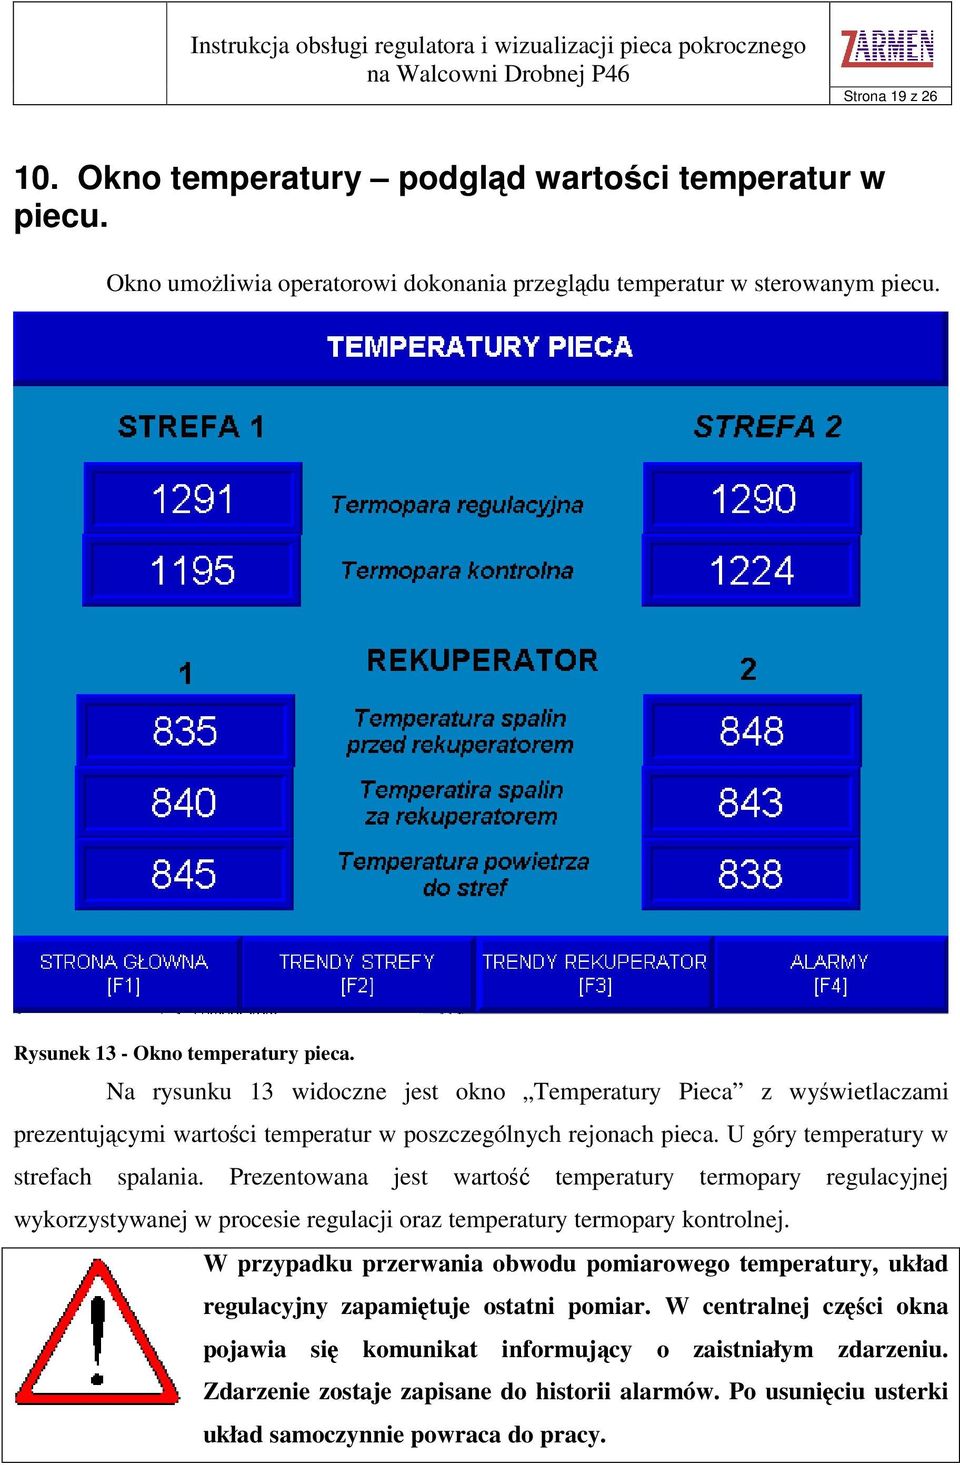 Prezentowana jest warto temperatury termopary regulacyjnej wykorzystywanej w procesie regulacji oraz temperatury termopary kontrolnej.